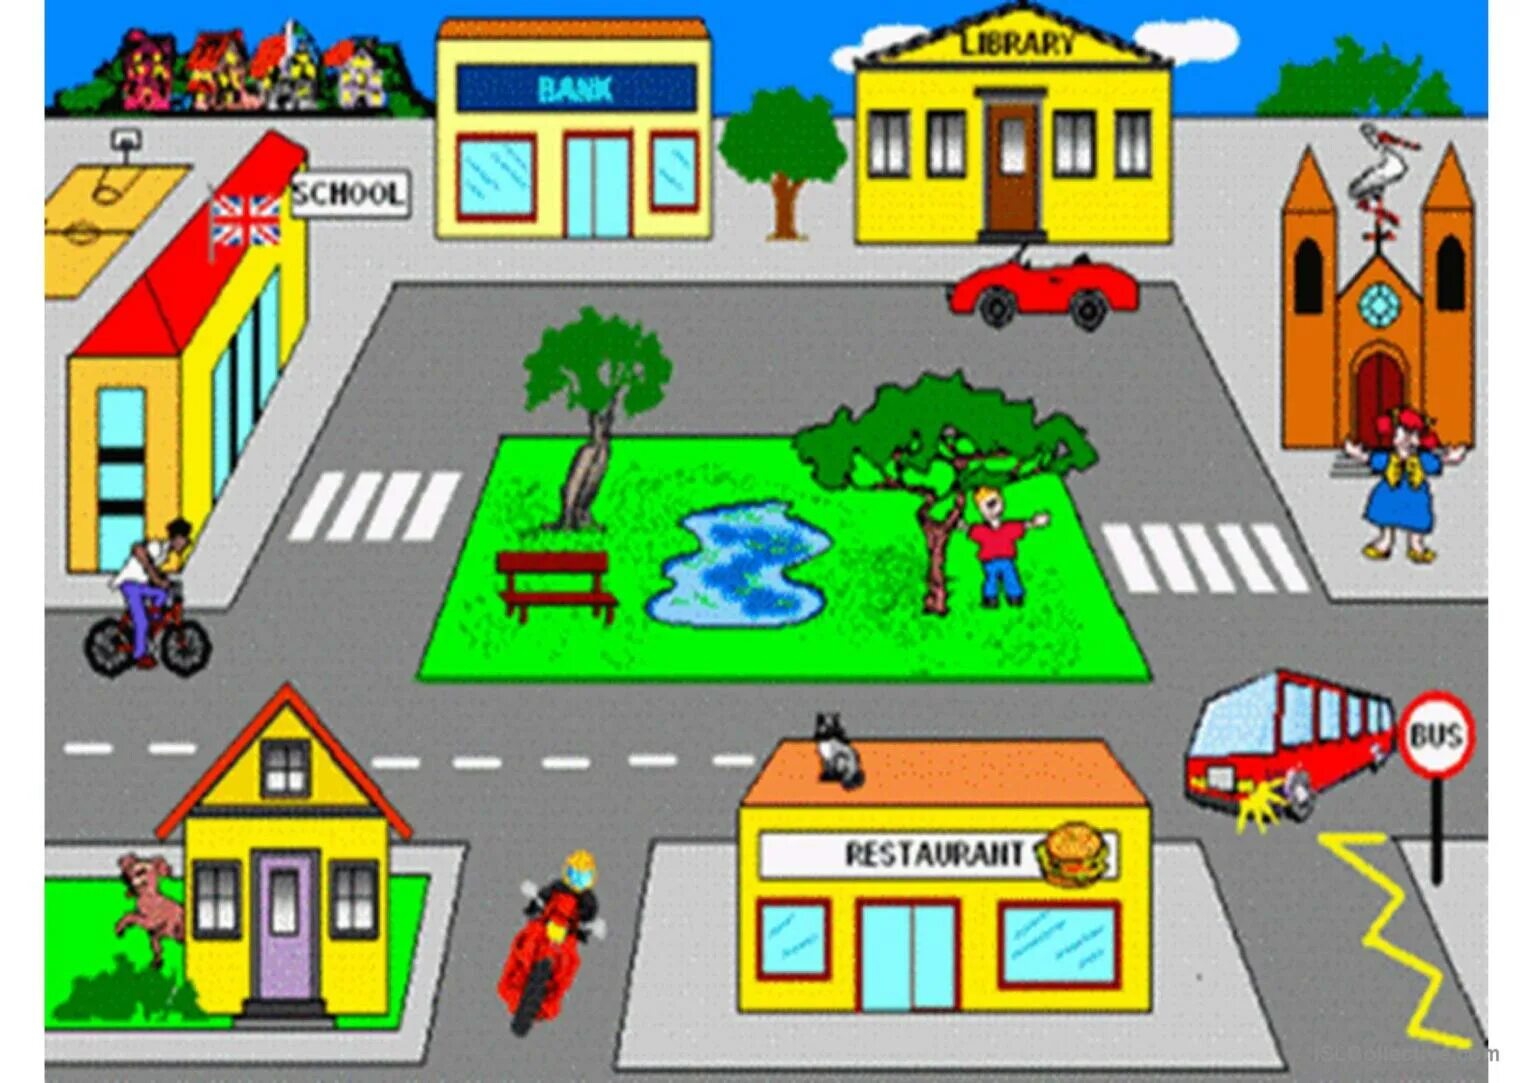 Go around the city. План города для детей. Картинка города для описания. Places in Town для детей. Картинка улицы для описания.